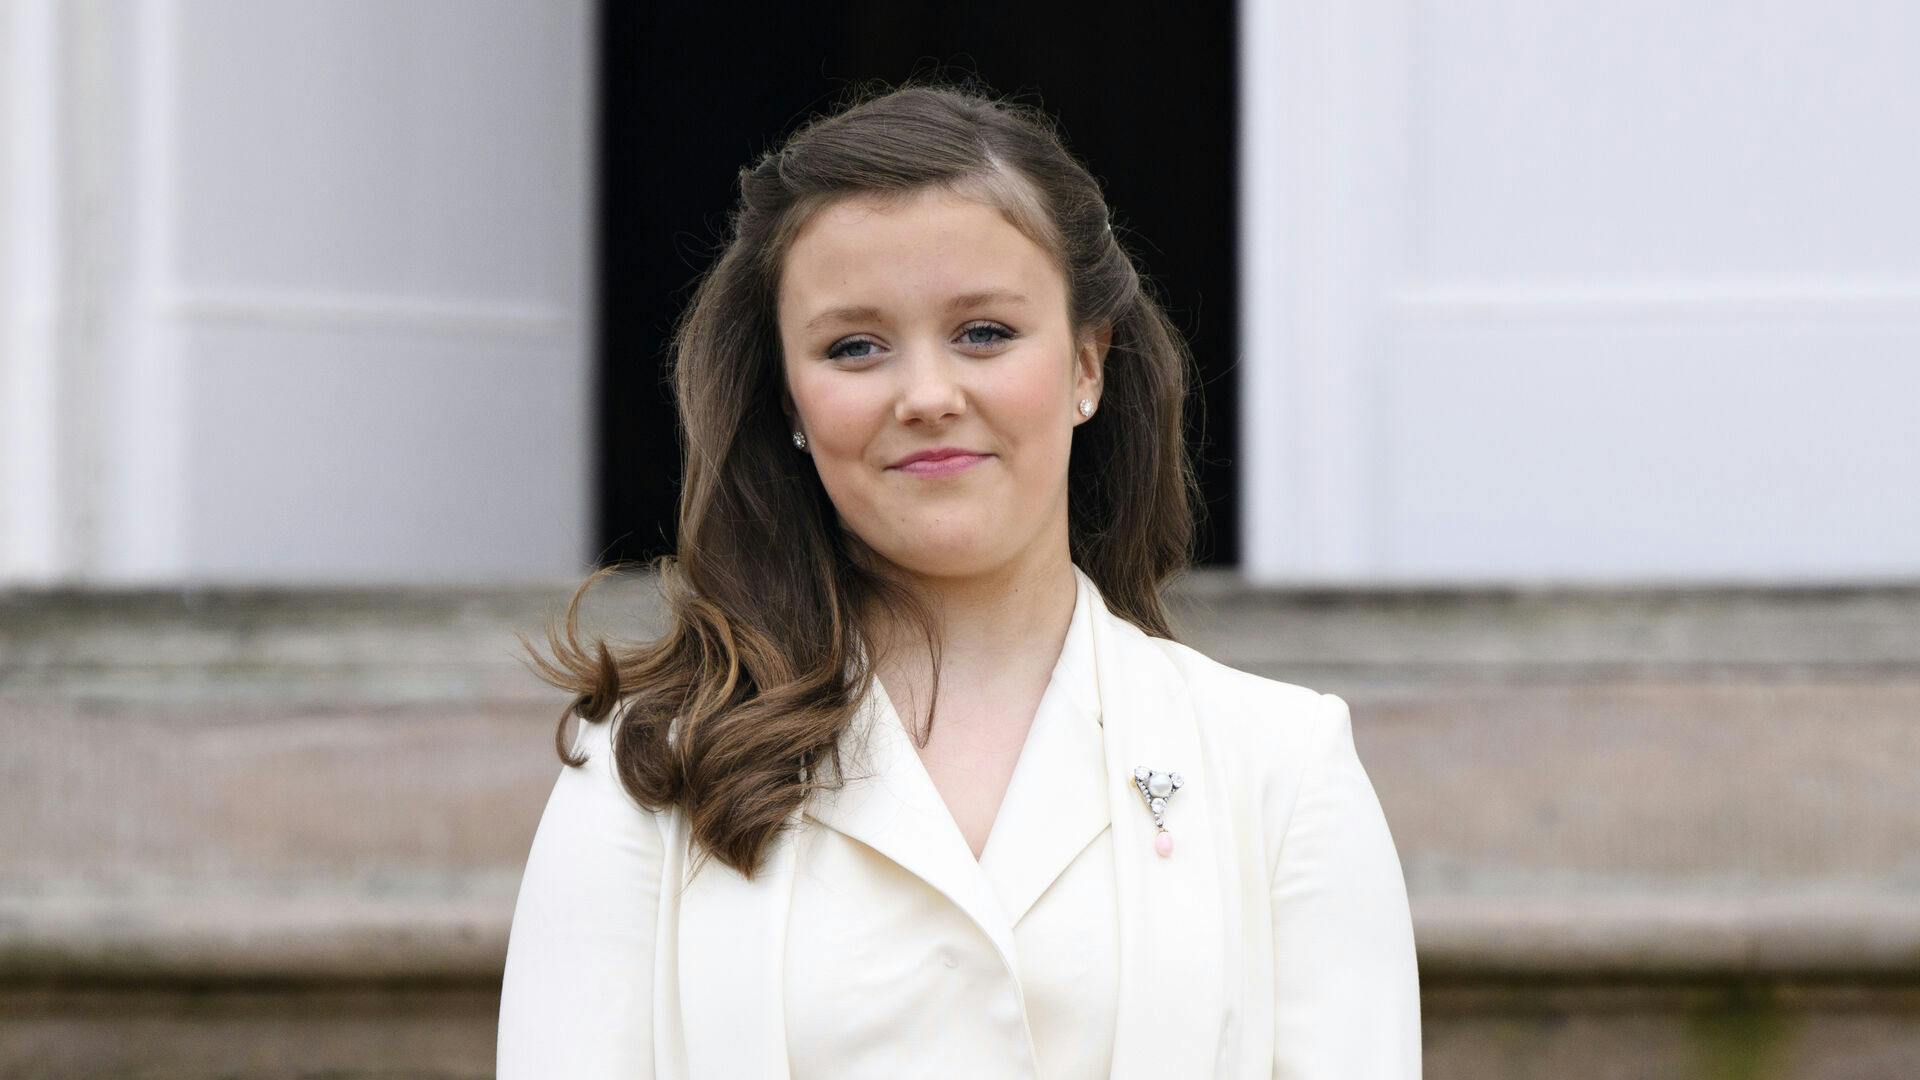 Prinsesse Isabella efter hun er blevet konfirmeret i Fredensborg Slotskirke i Fredensborg, lørdag den 30. april 2022.
